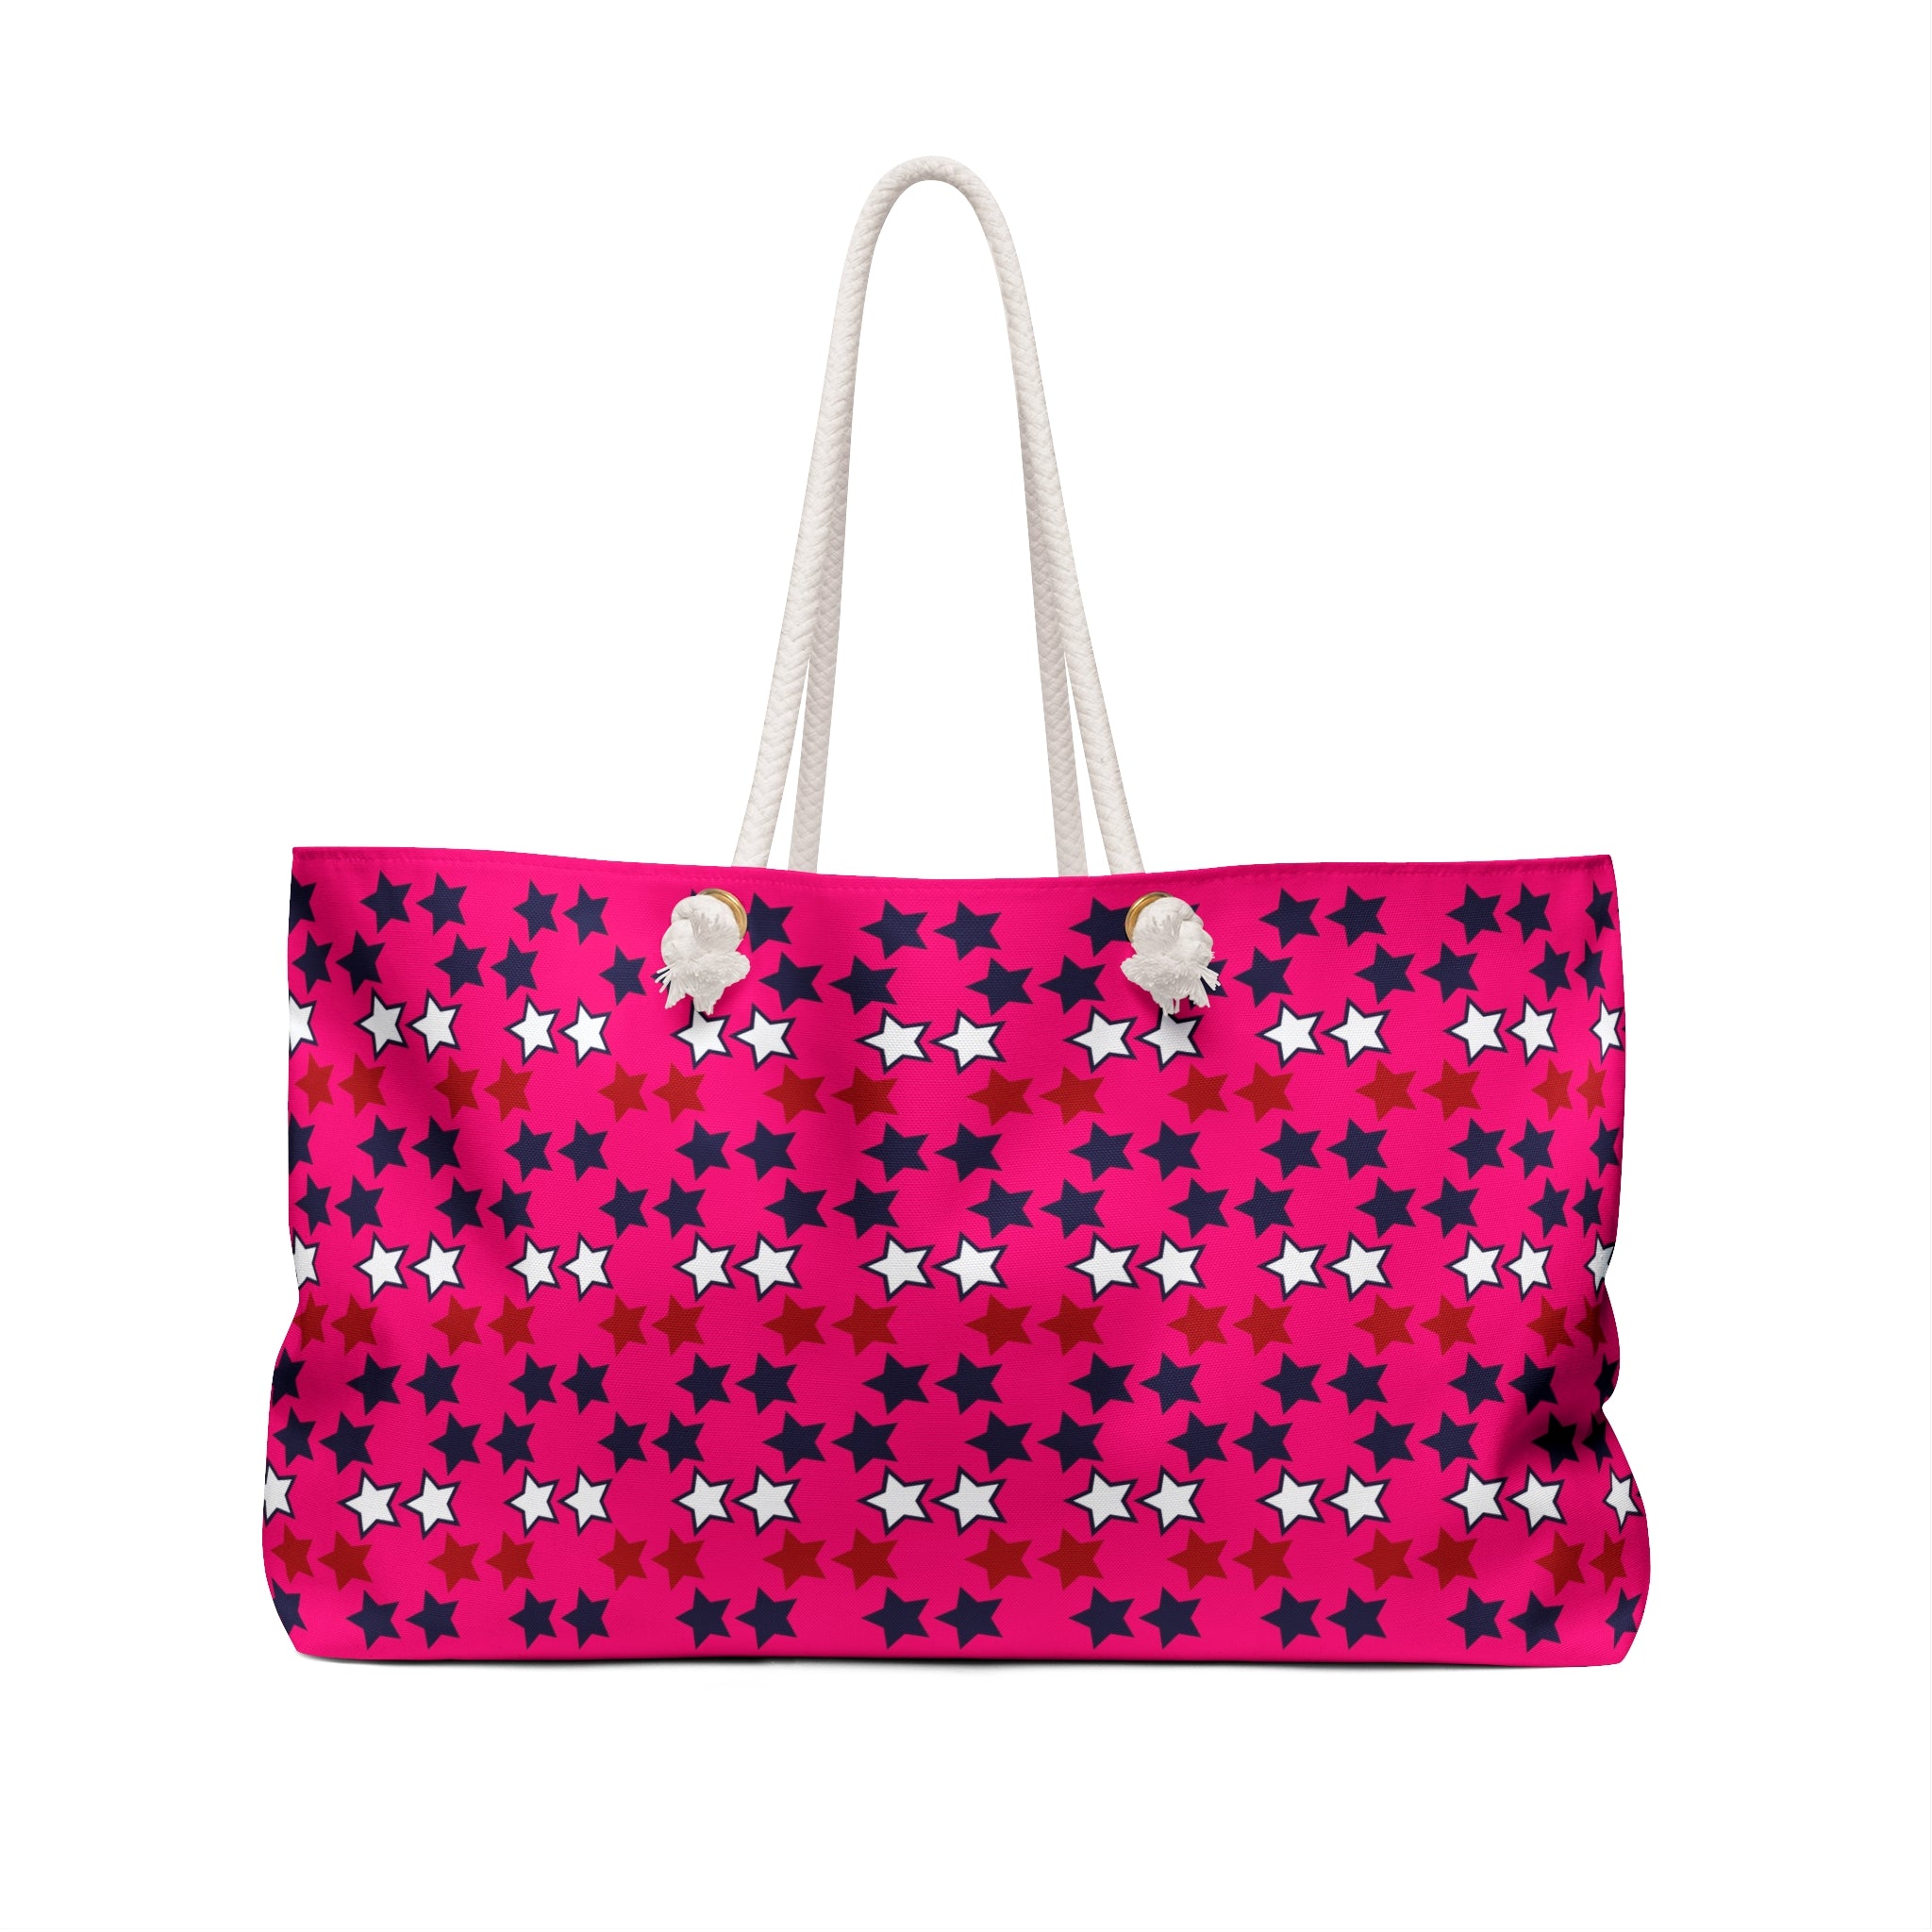 Hot Pink Starry Weekender Tote Bag